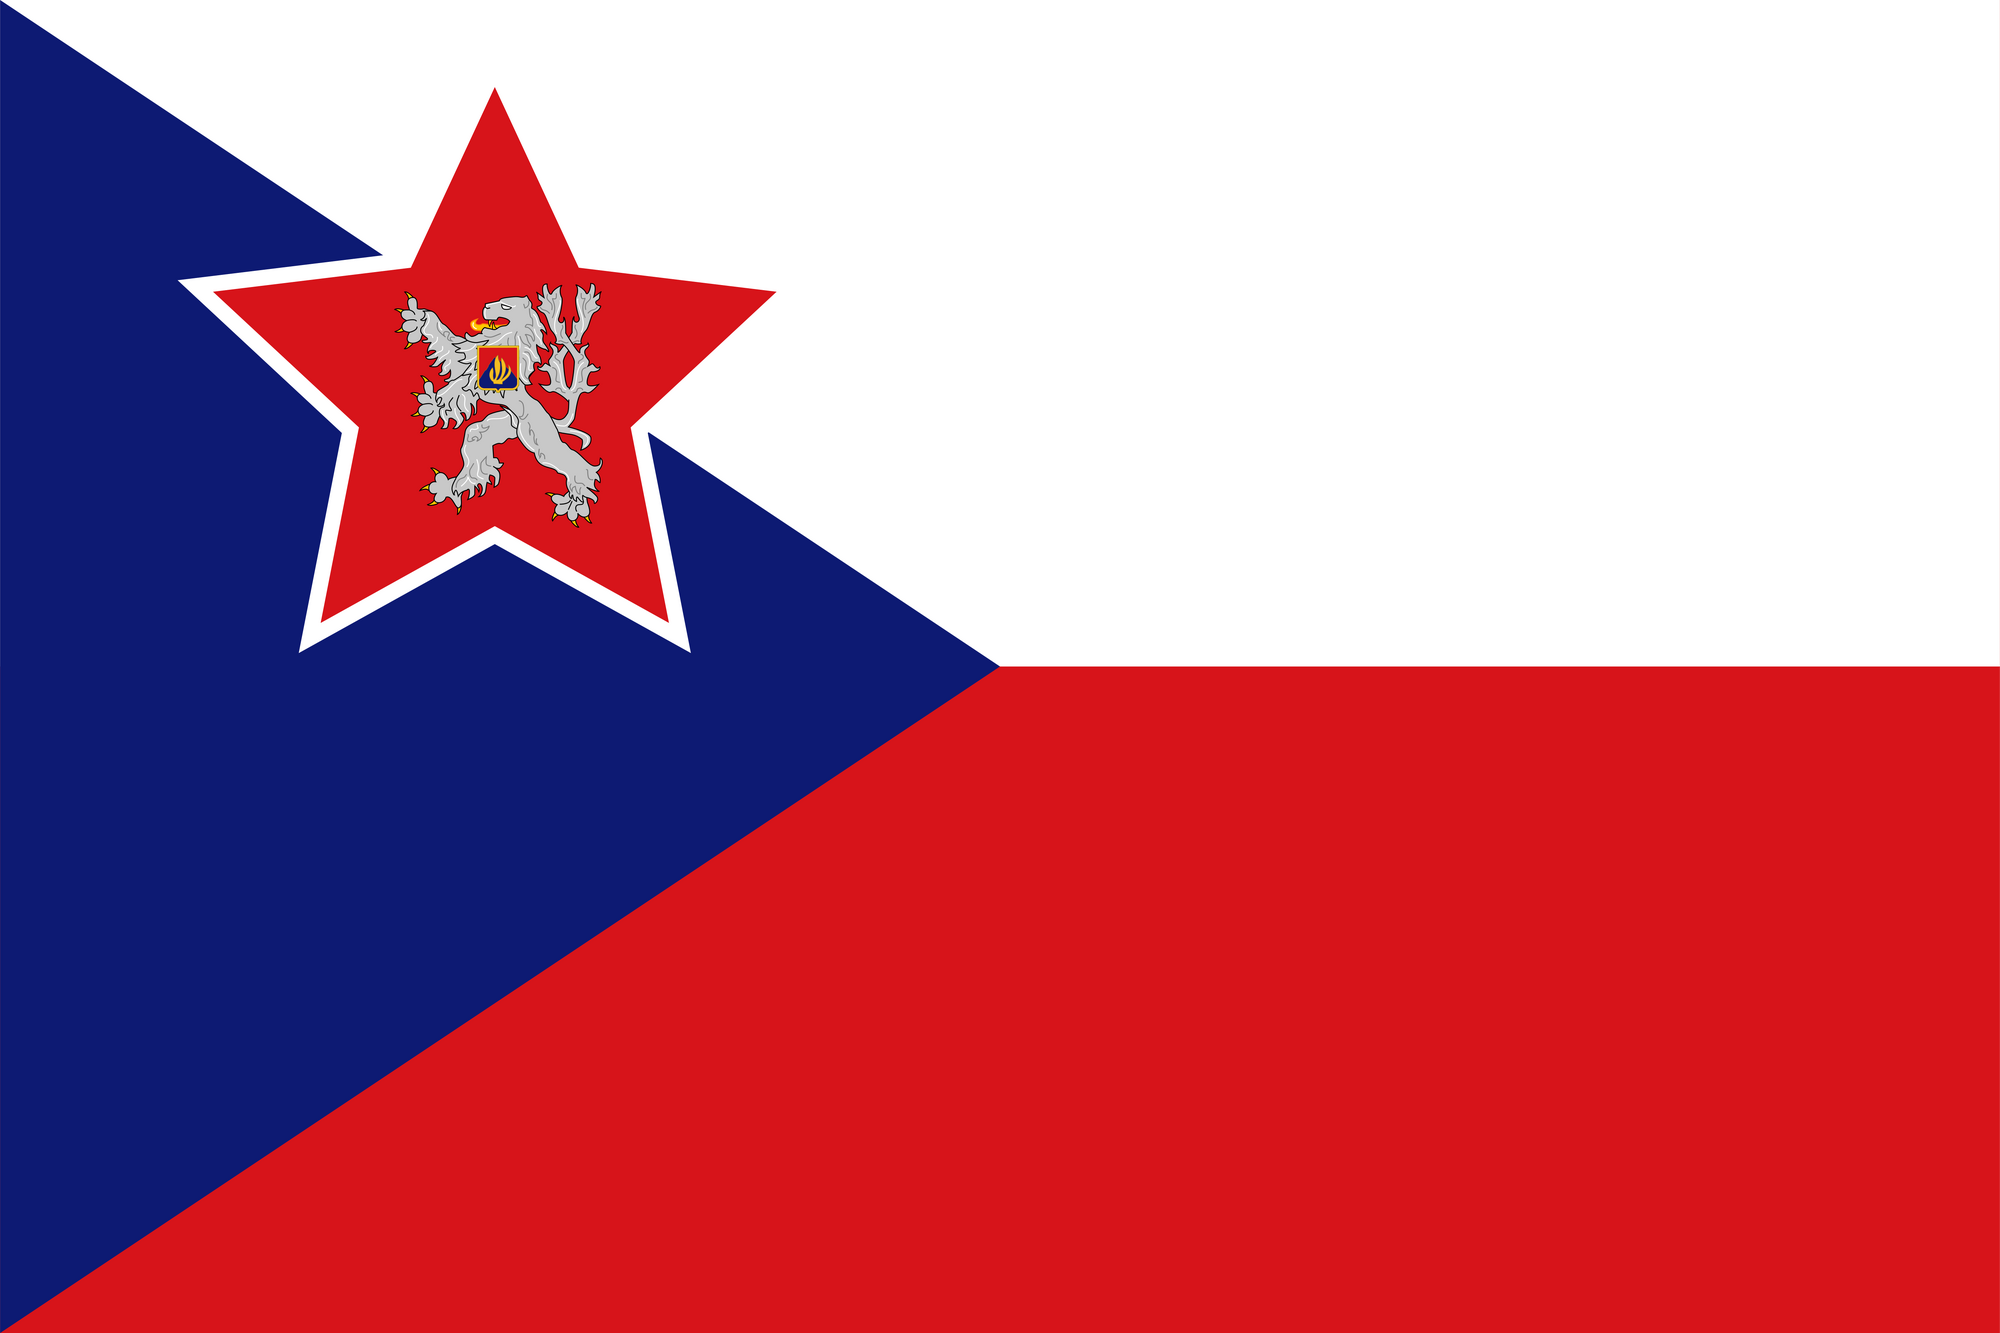 Коммунистическая чехословакия. Флаг Чехословакии. Флаг Чехословакии 1918. Квадратный флаг Чехословакии. Флаг Чехии при коммунизме.